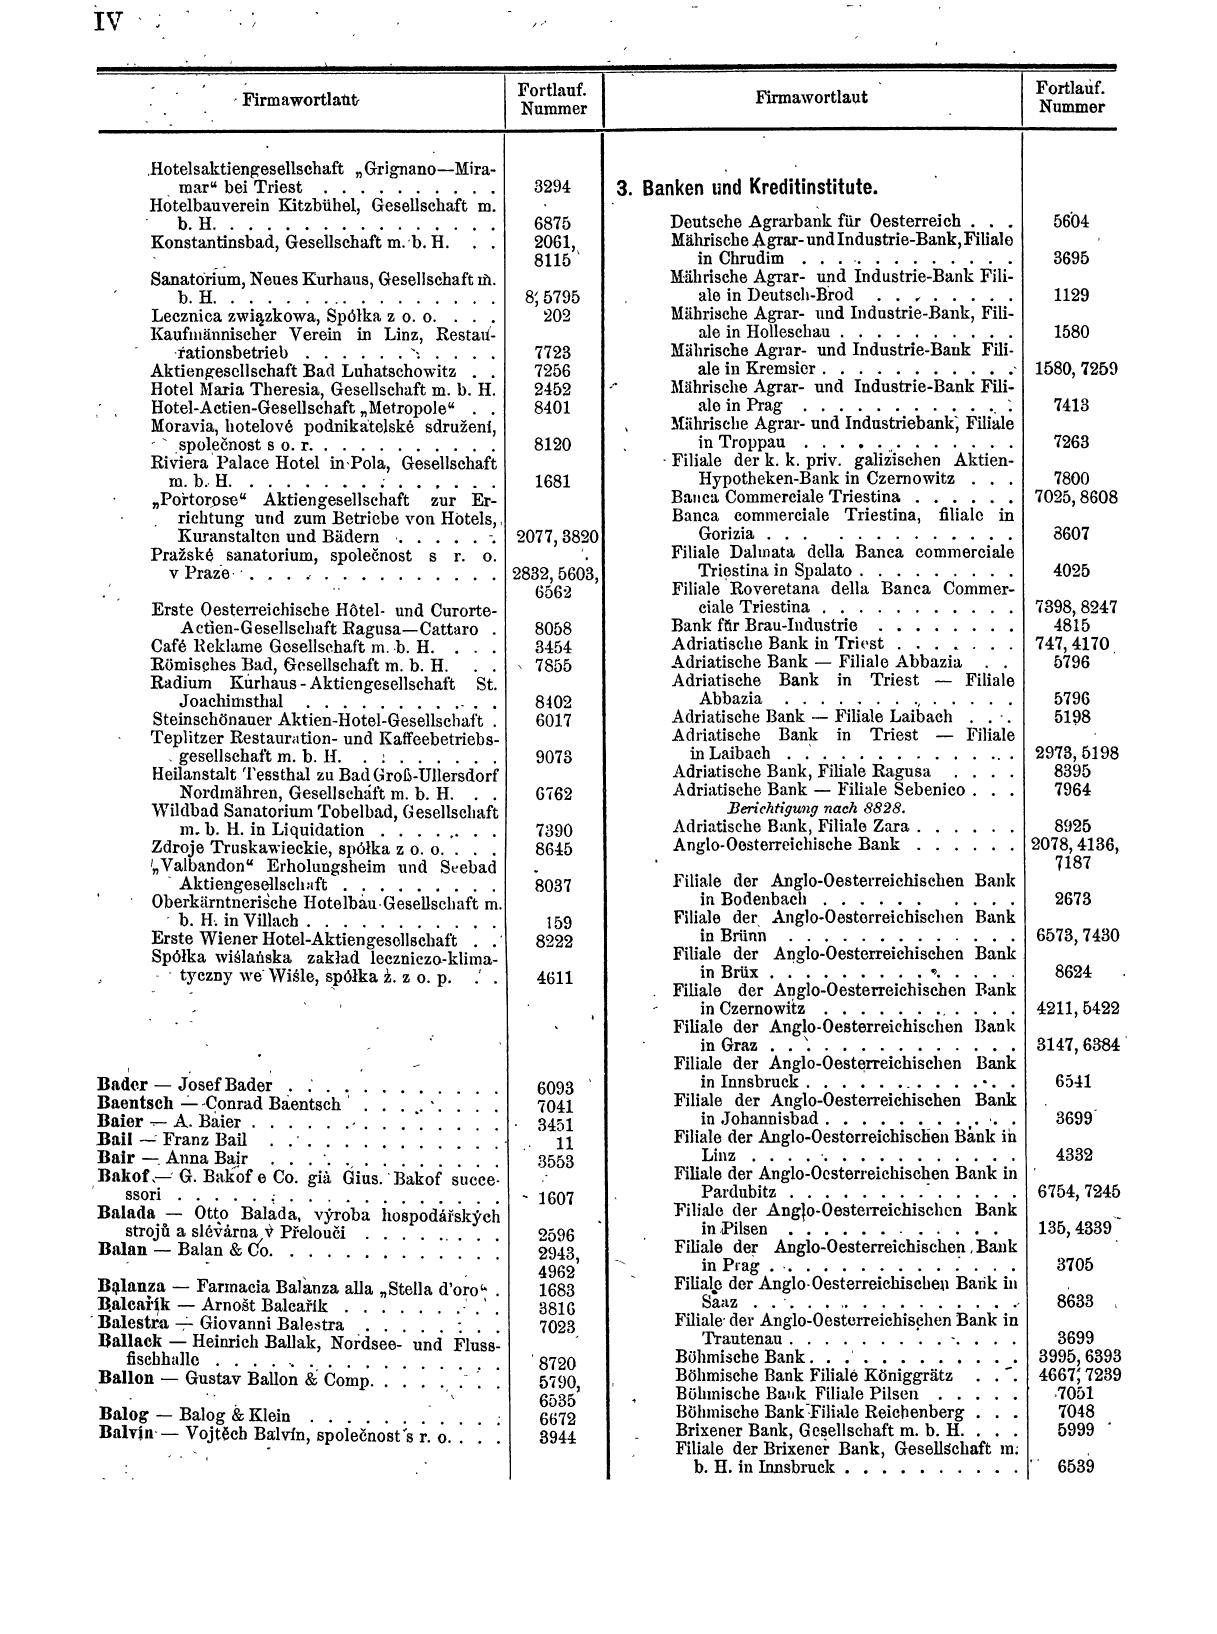 Zentralblatt für die Eintragungen in das Handelsregister 1913, Teil 1 - Seite 12